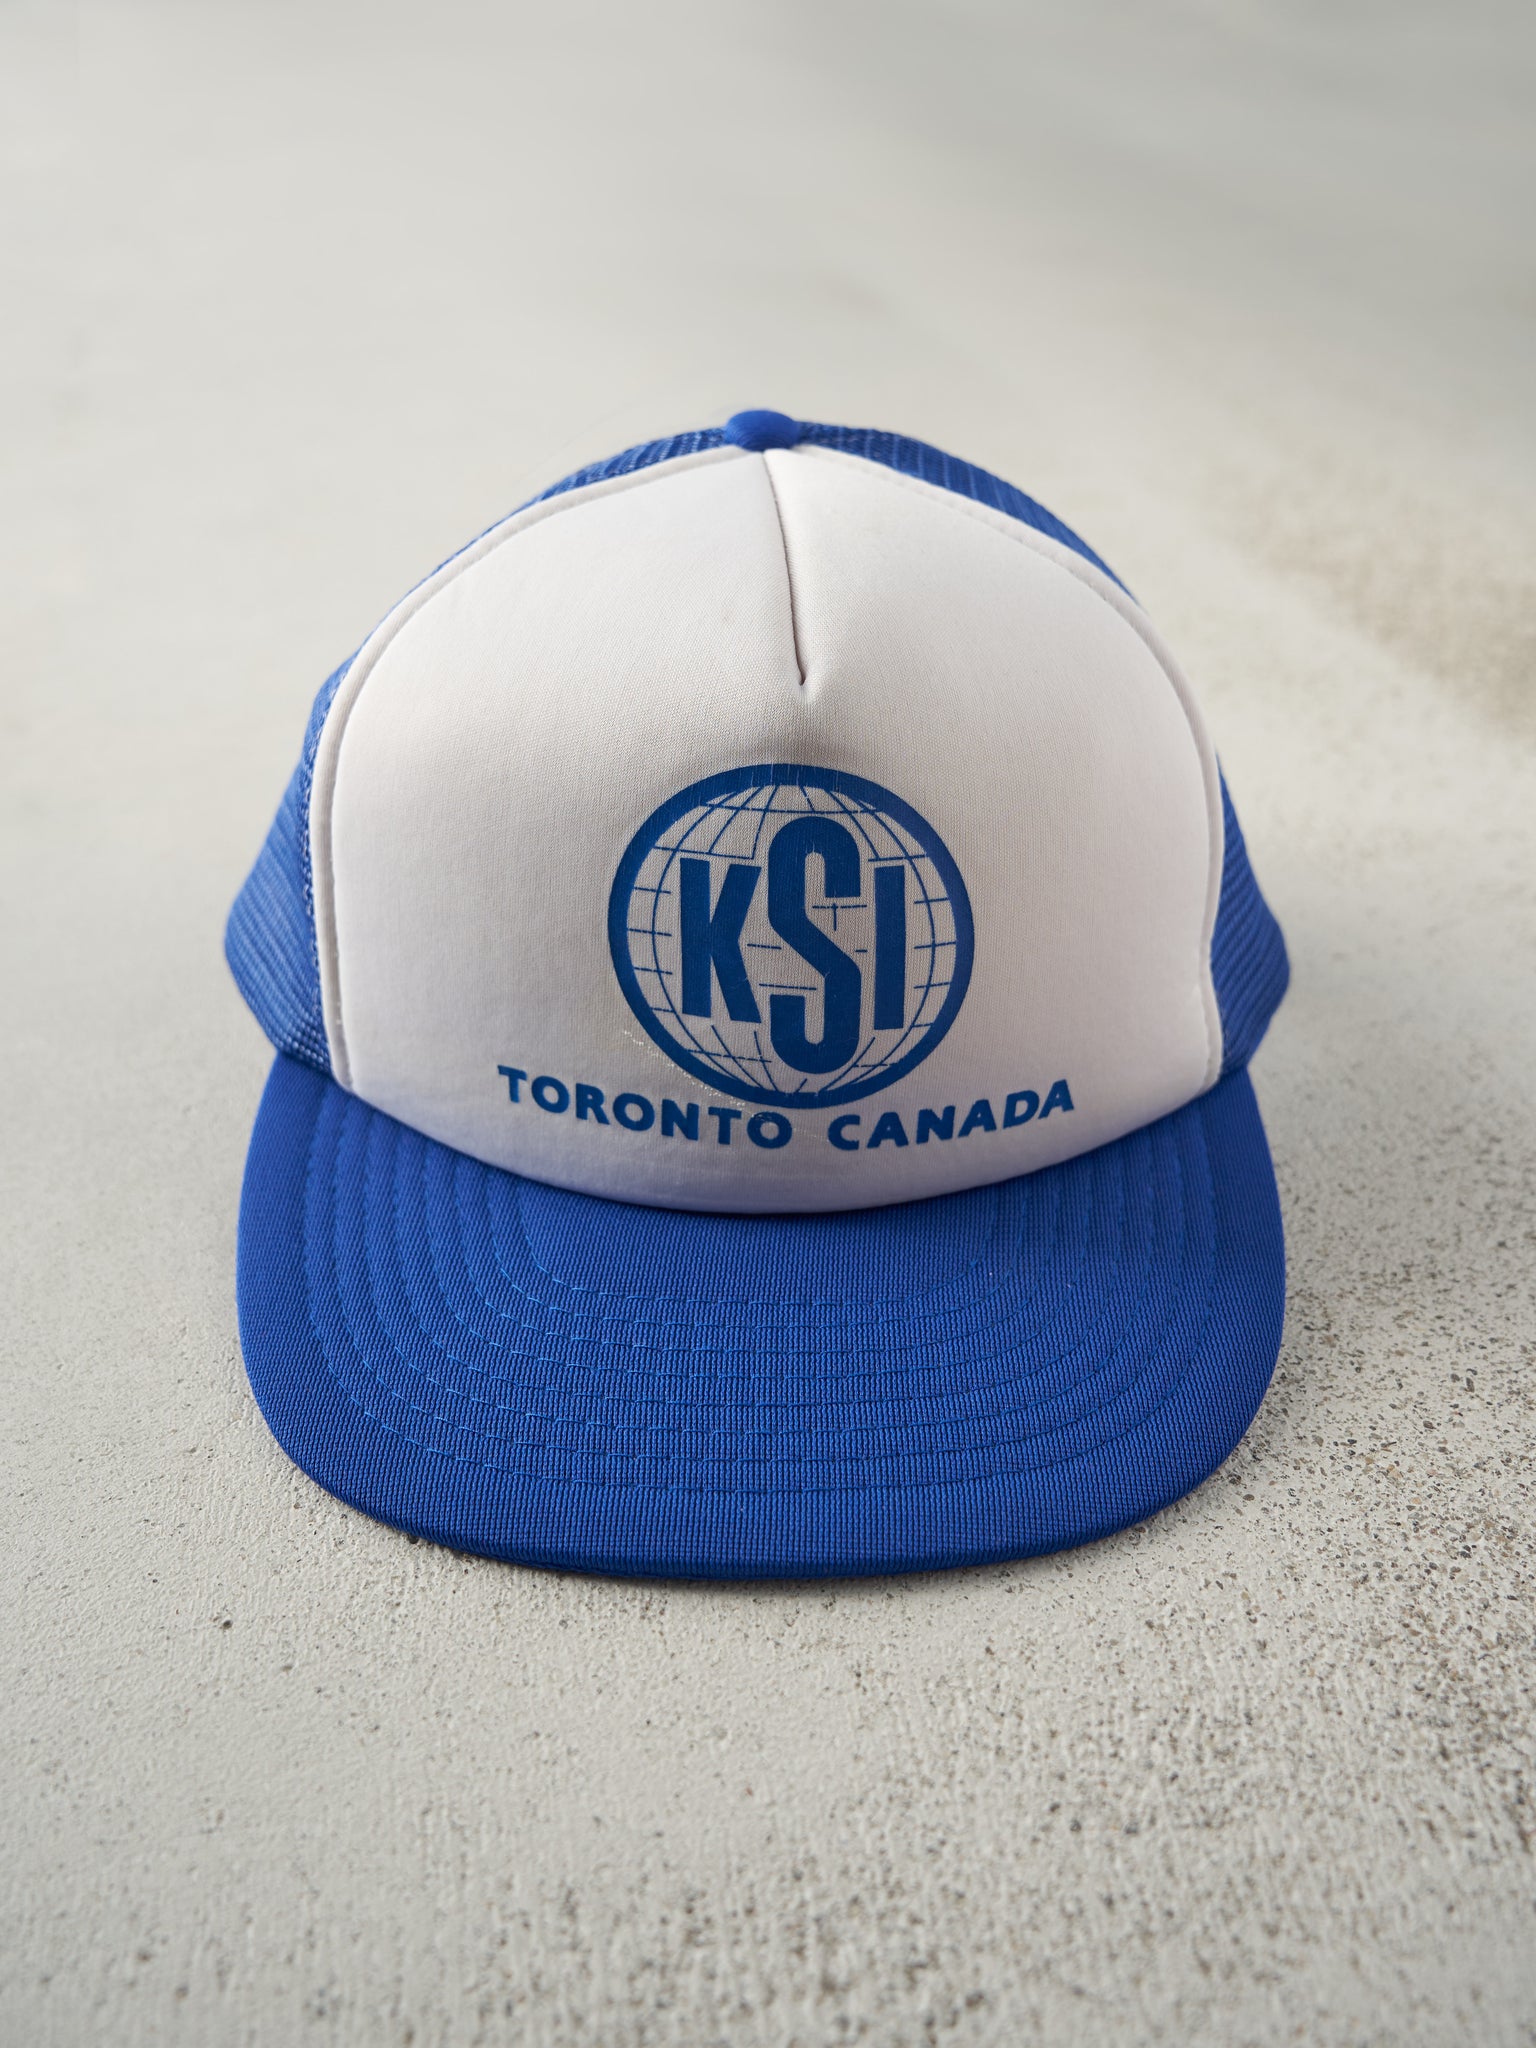 Vintage 90s Blue & White Toronto KSI Foam Trucker Hat